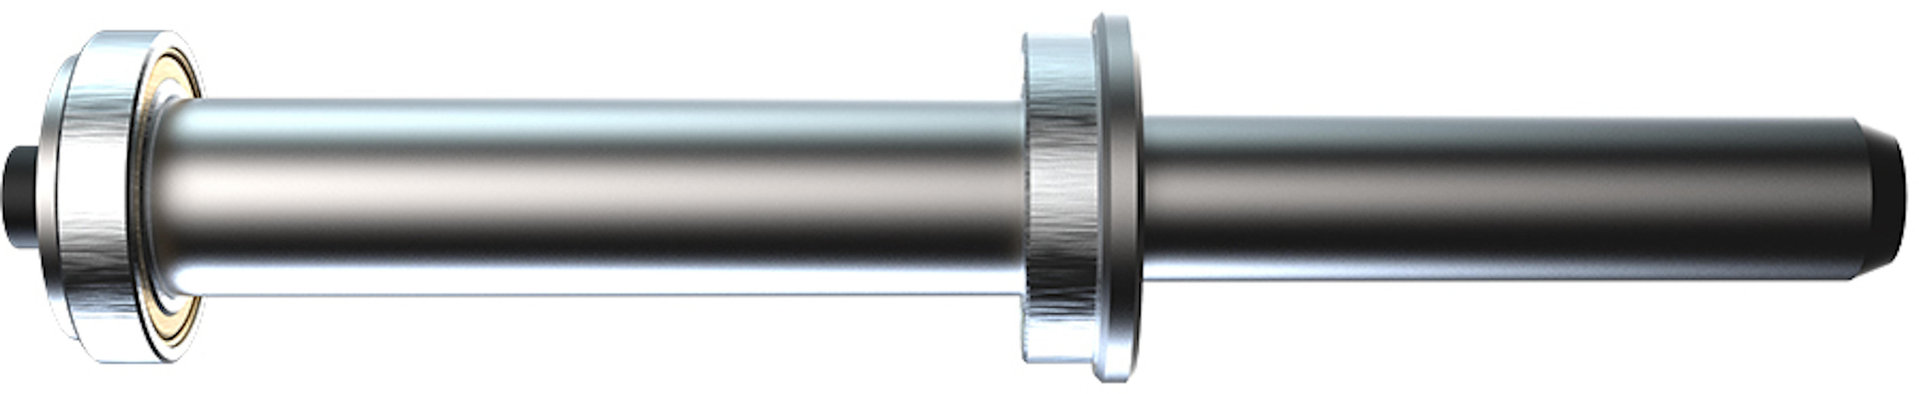 Oxford Zero-G Pin de 21,5 mm para soporte de montaje de basculante único - Plata (un tamaño)